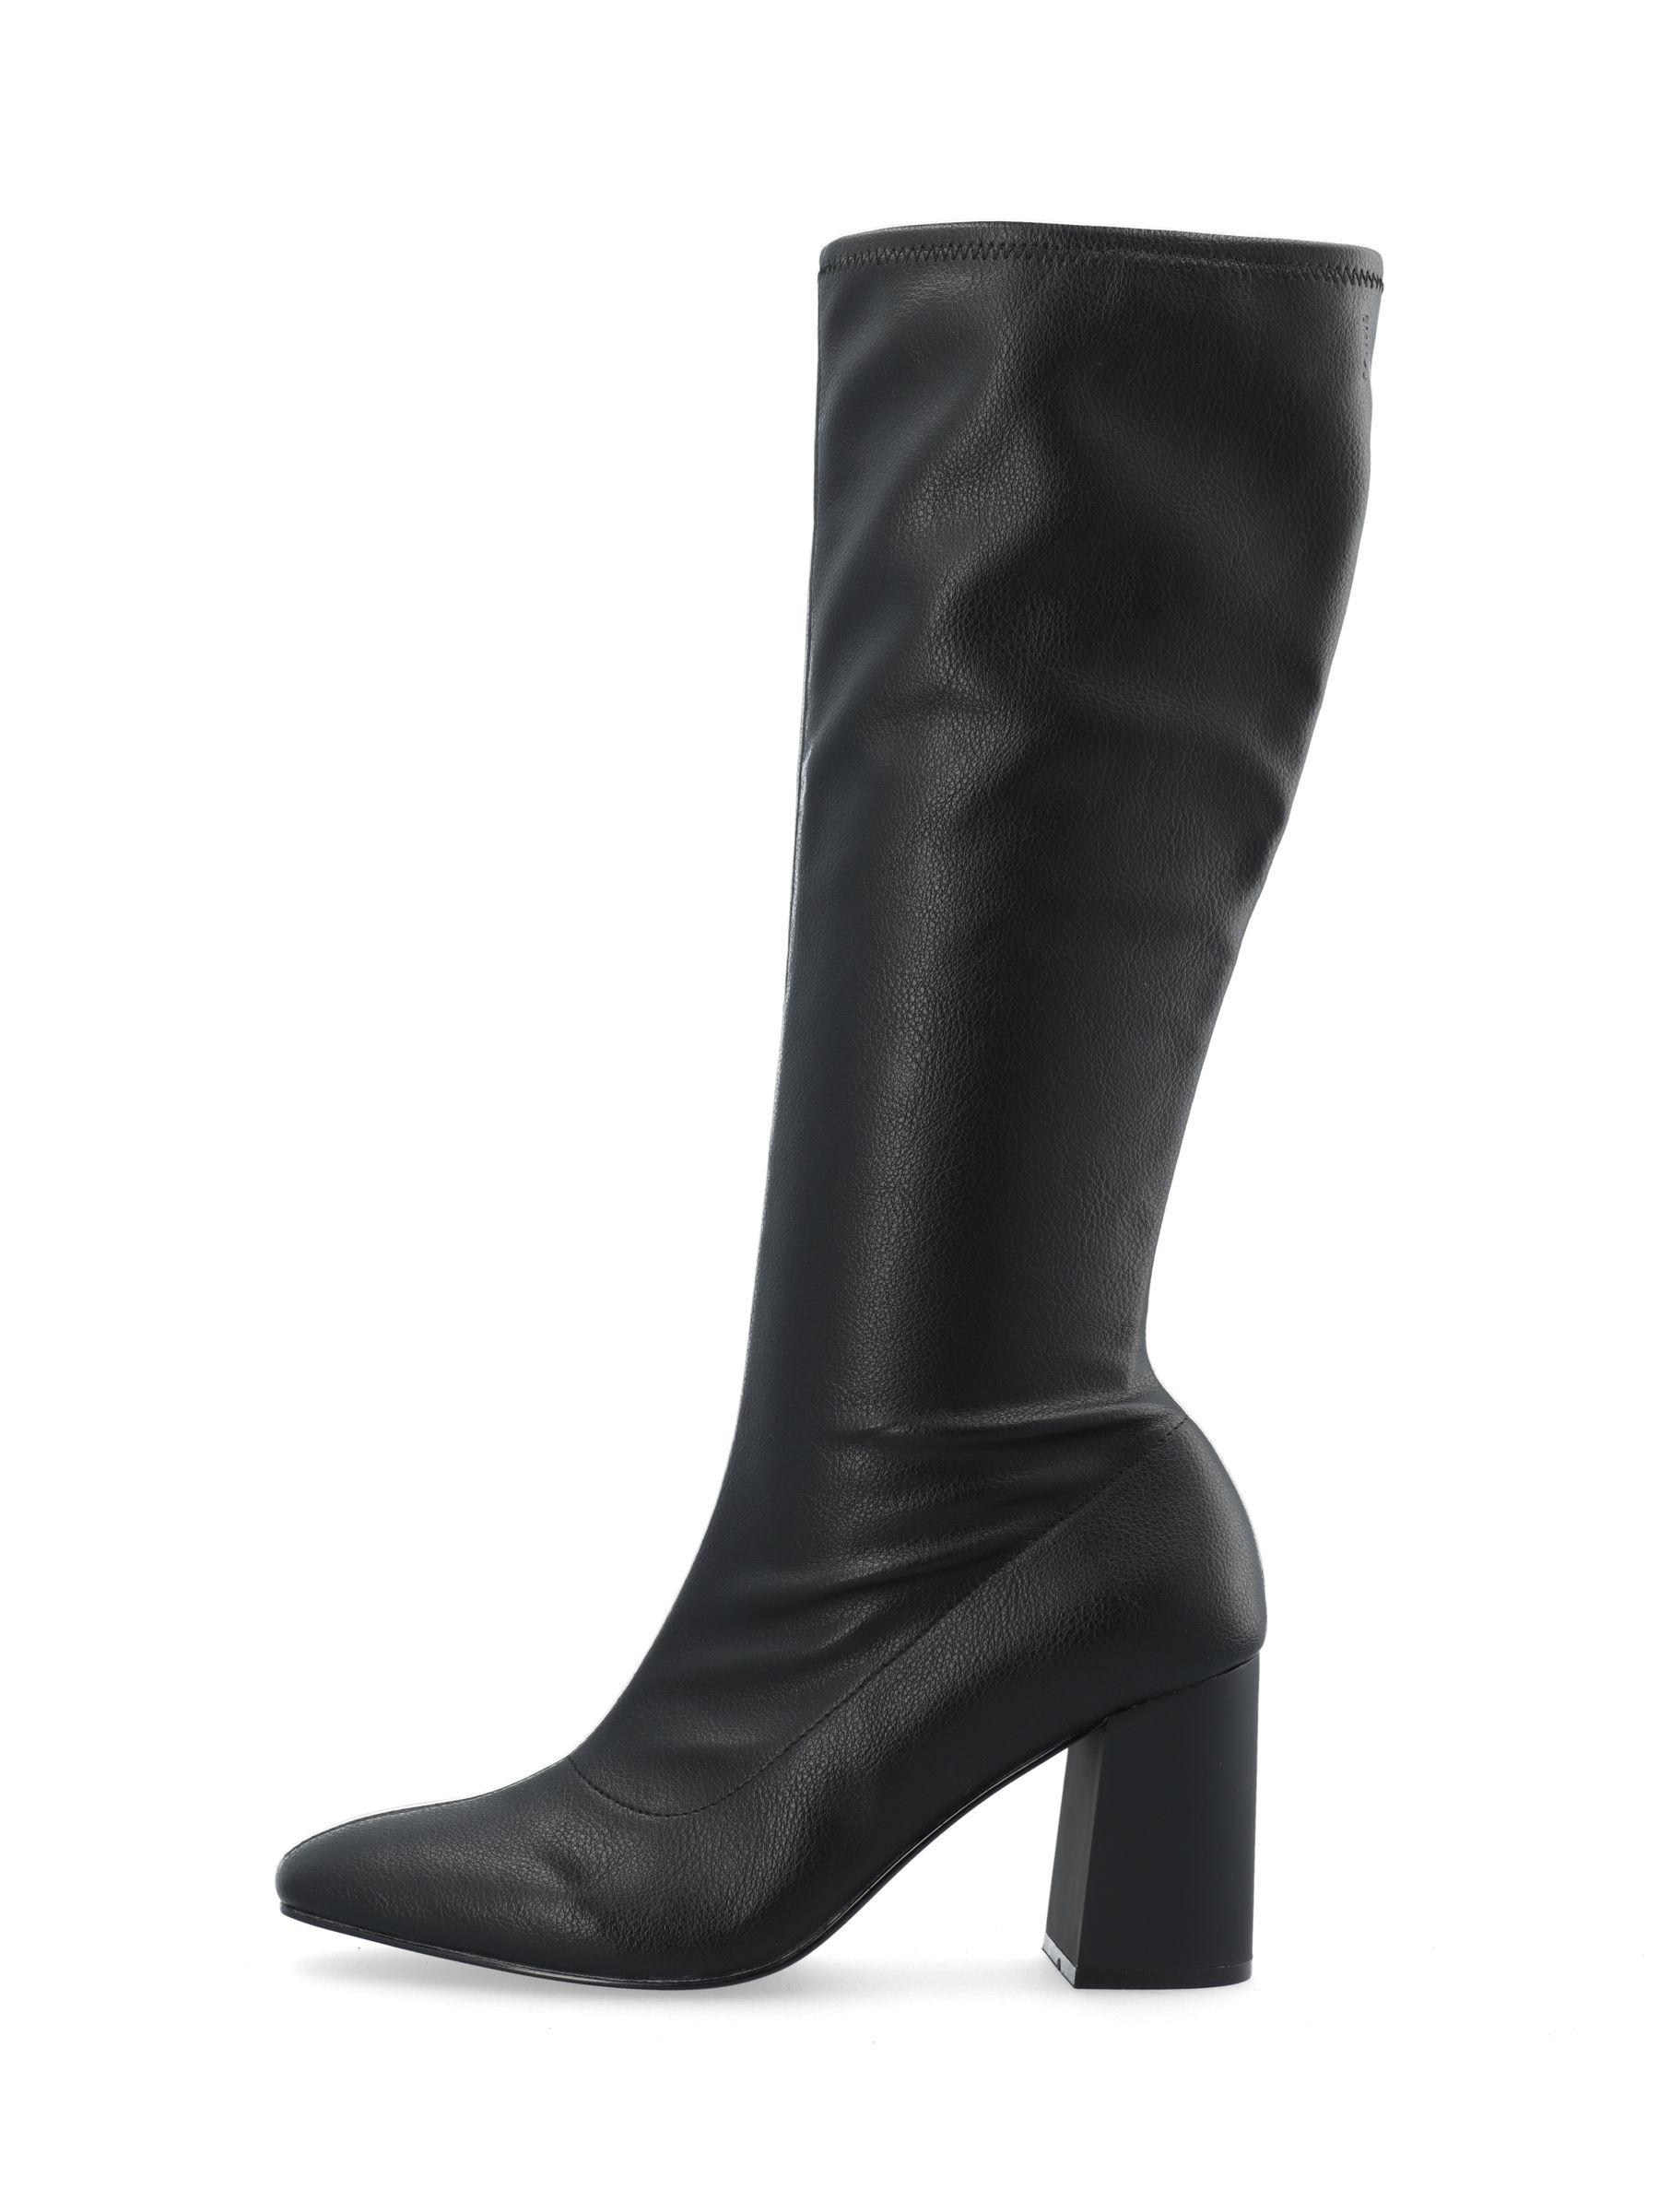 Biaellie knee-high boots | Bianco